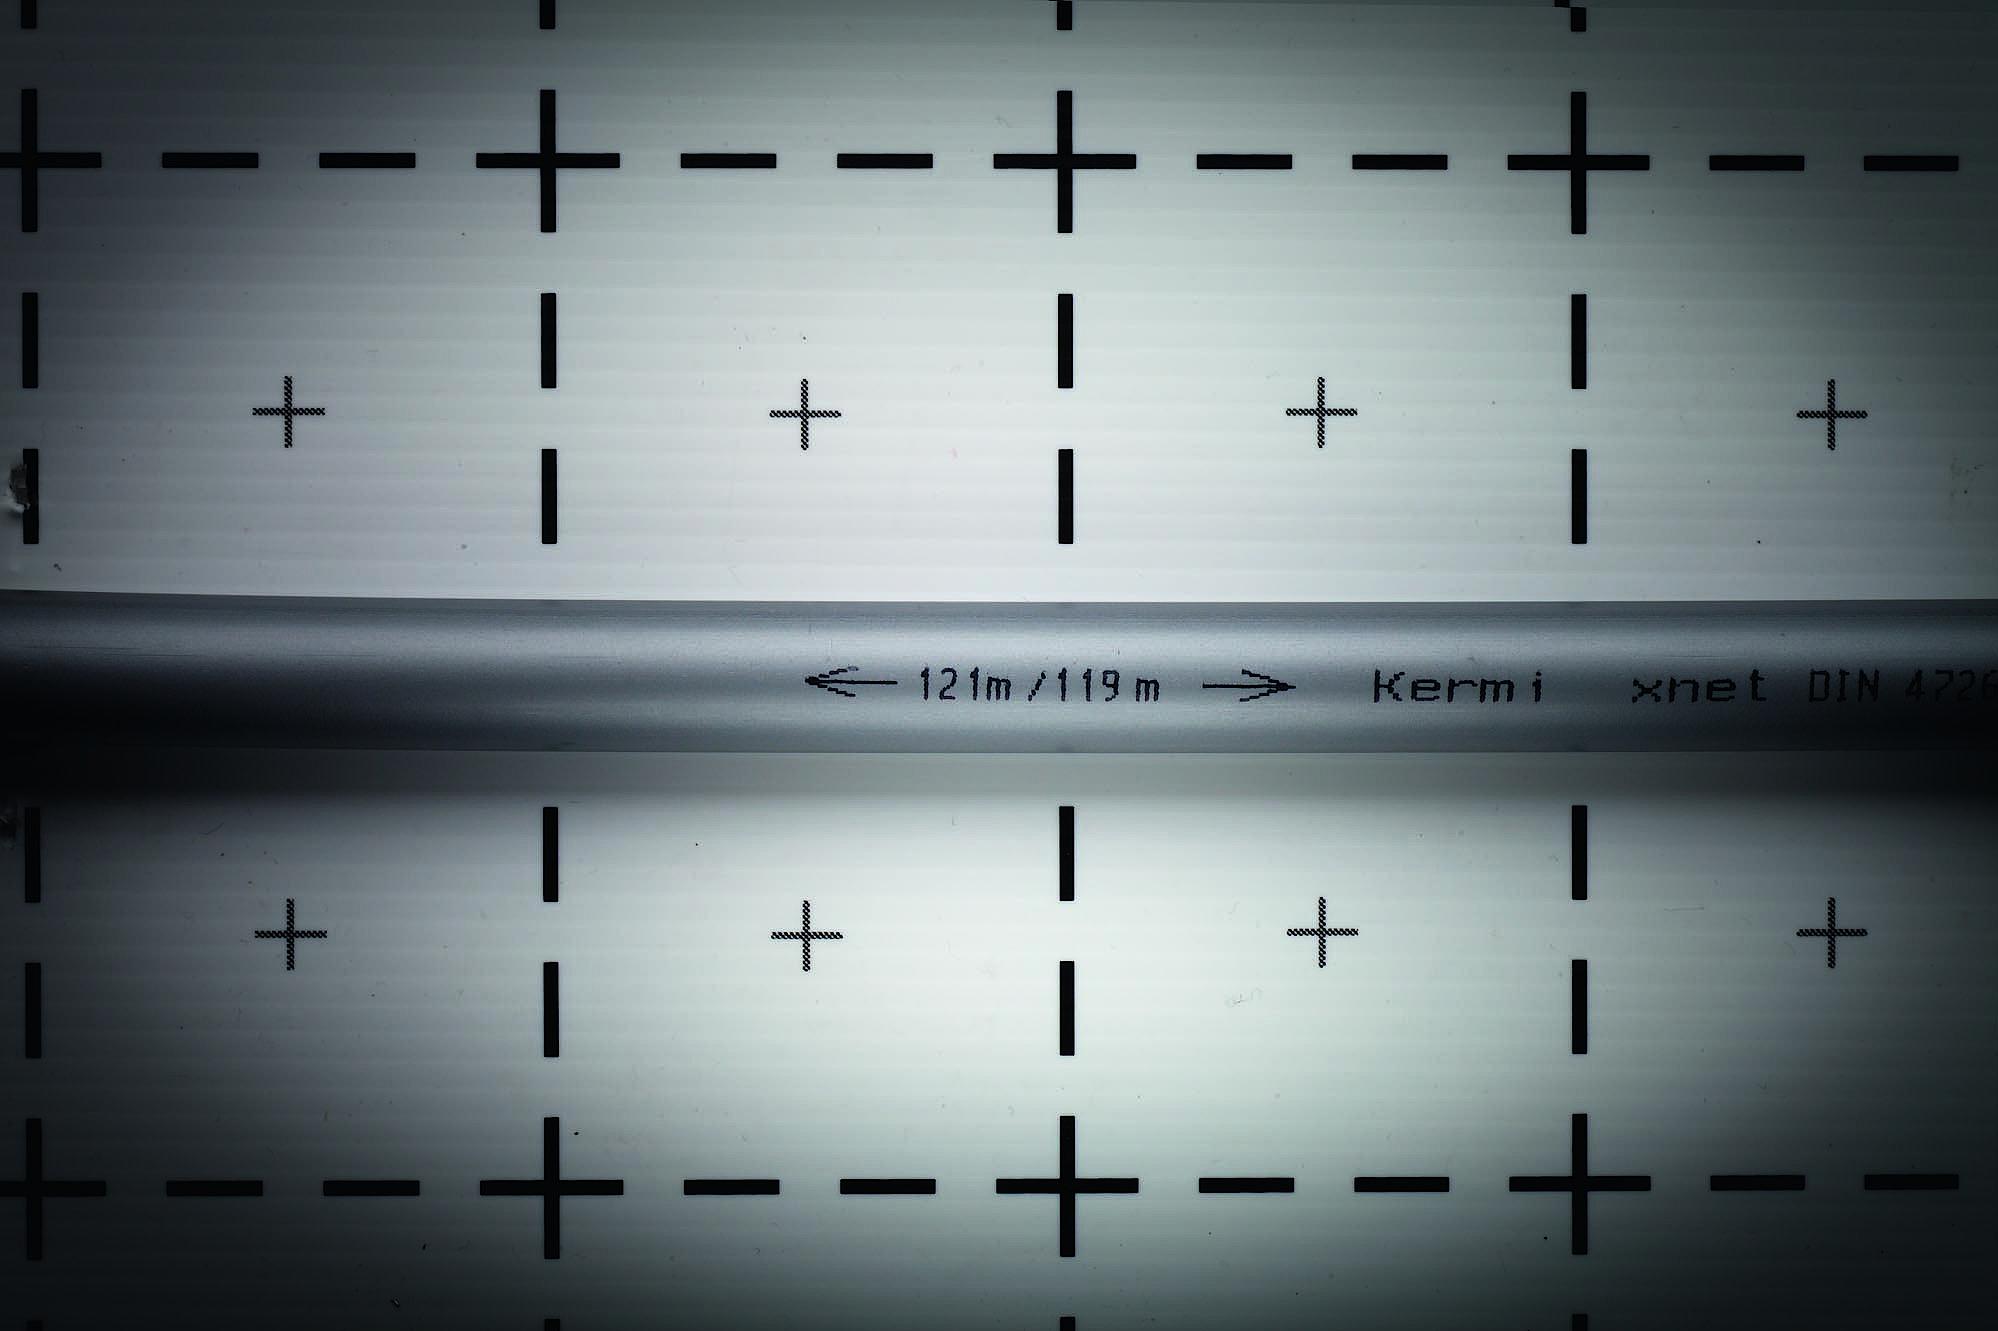 Kermi x-net 5 slāņu PE-Xc uzdruka uz caurules ar norādītu atlikušo un jau izlietoto garumu, lai optimālu izmantotu cauruļu rituļus.